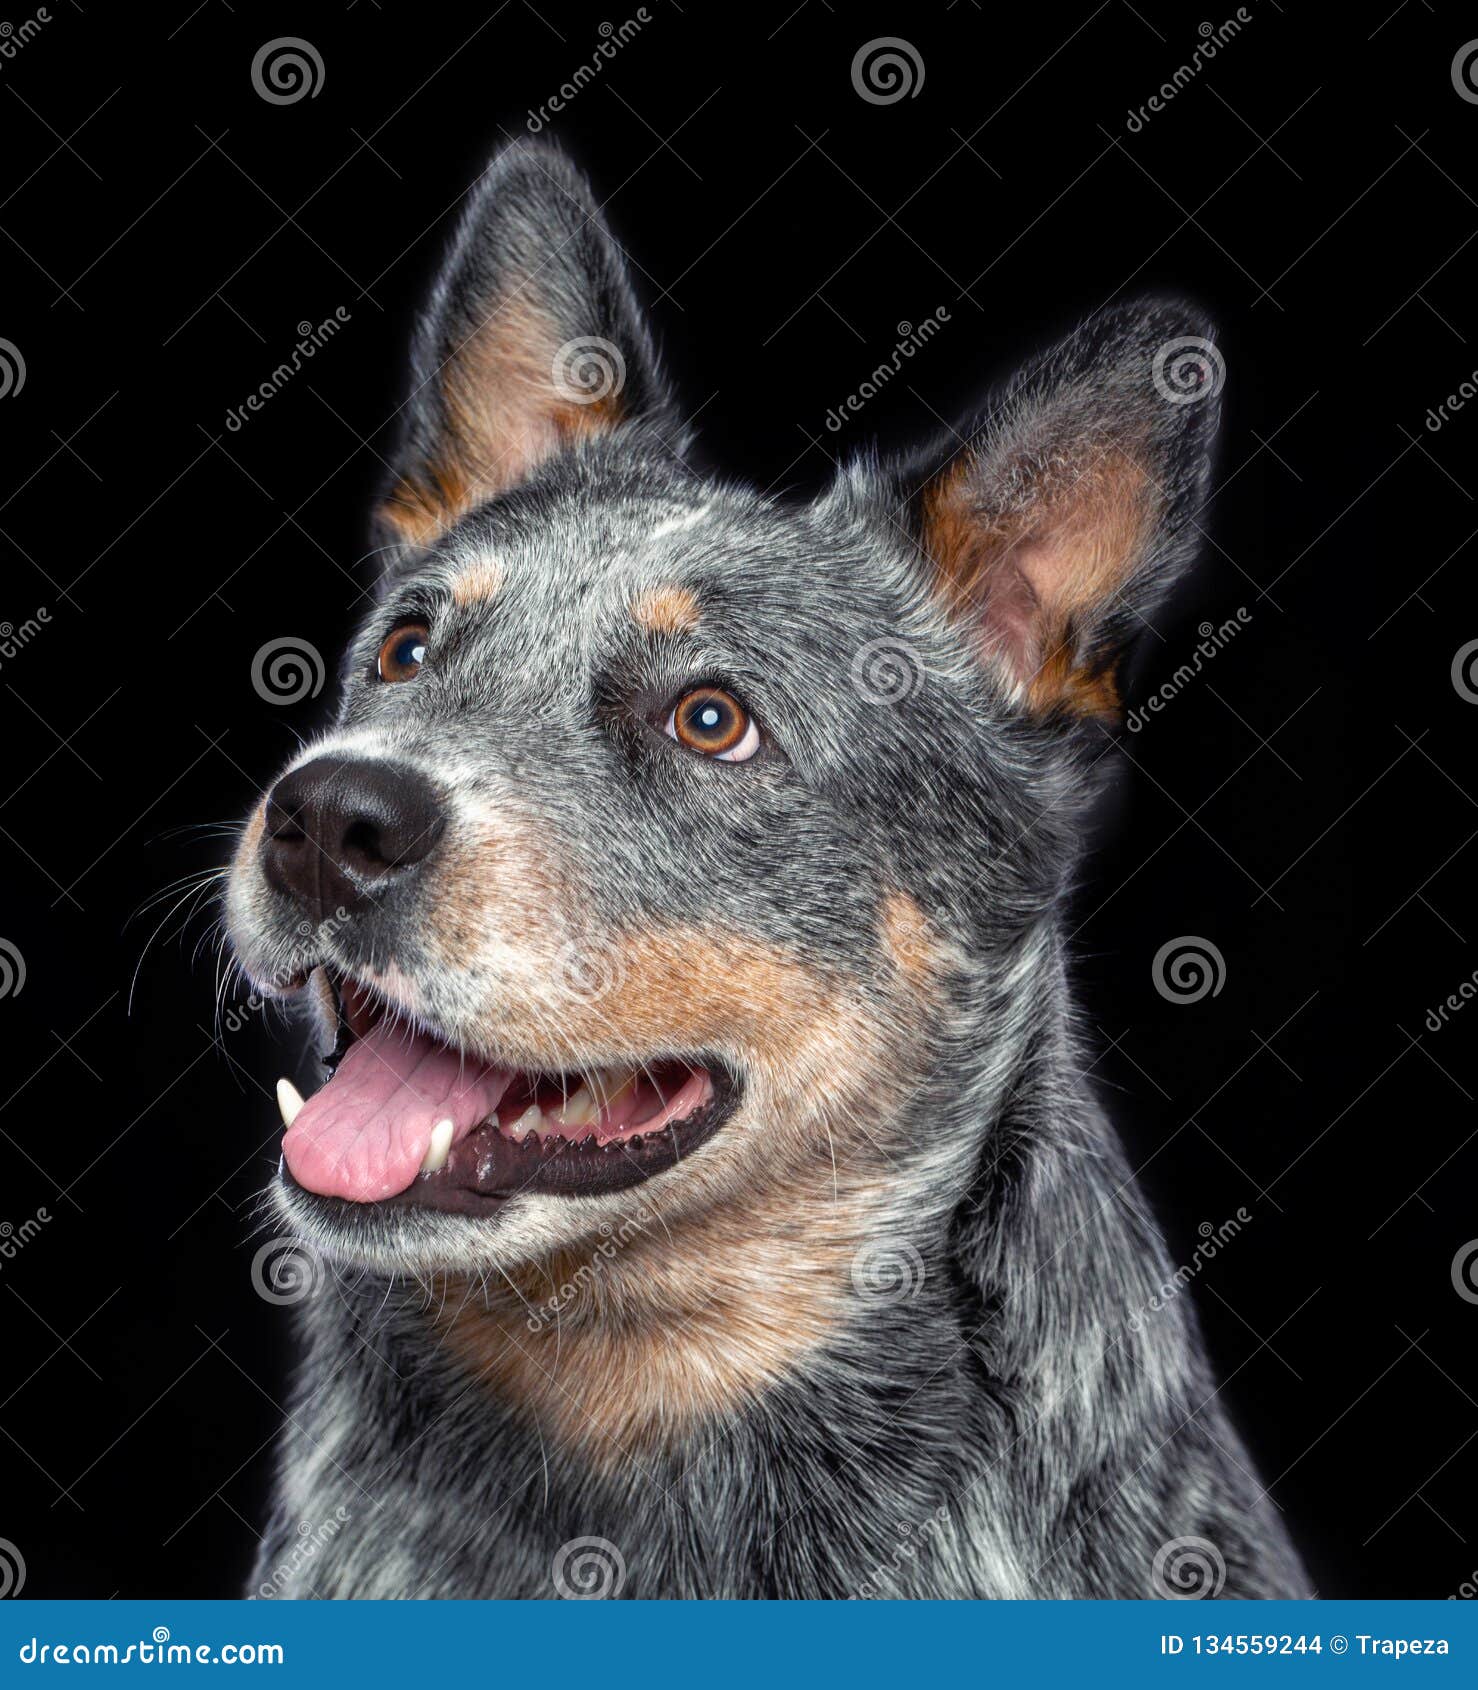 Australian Cattle Dog, Blue Heeler Dog Isolated on Background Stock - Image of posing, portrait: 134559244